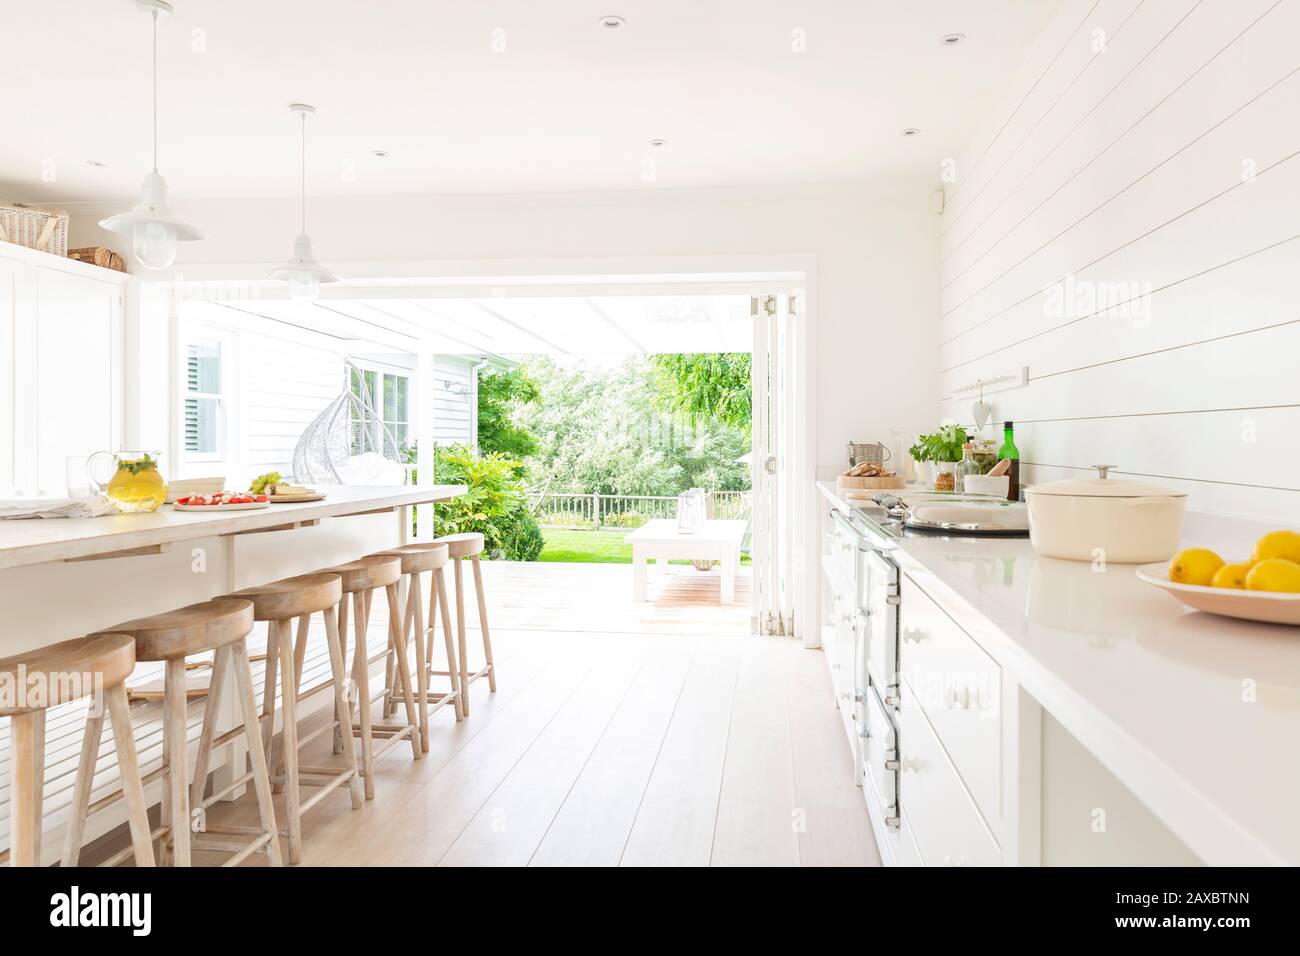 Simple white home showcase interior kitchen open to patio Stock Photo